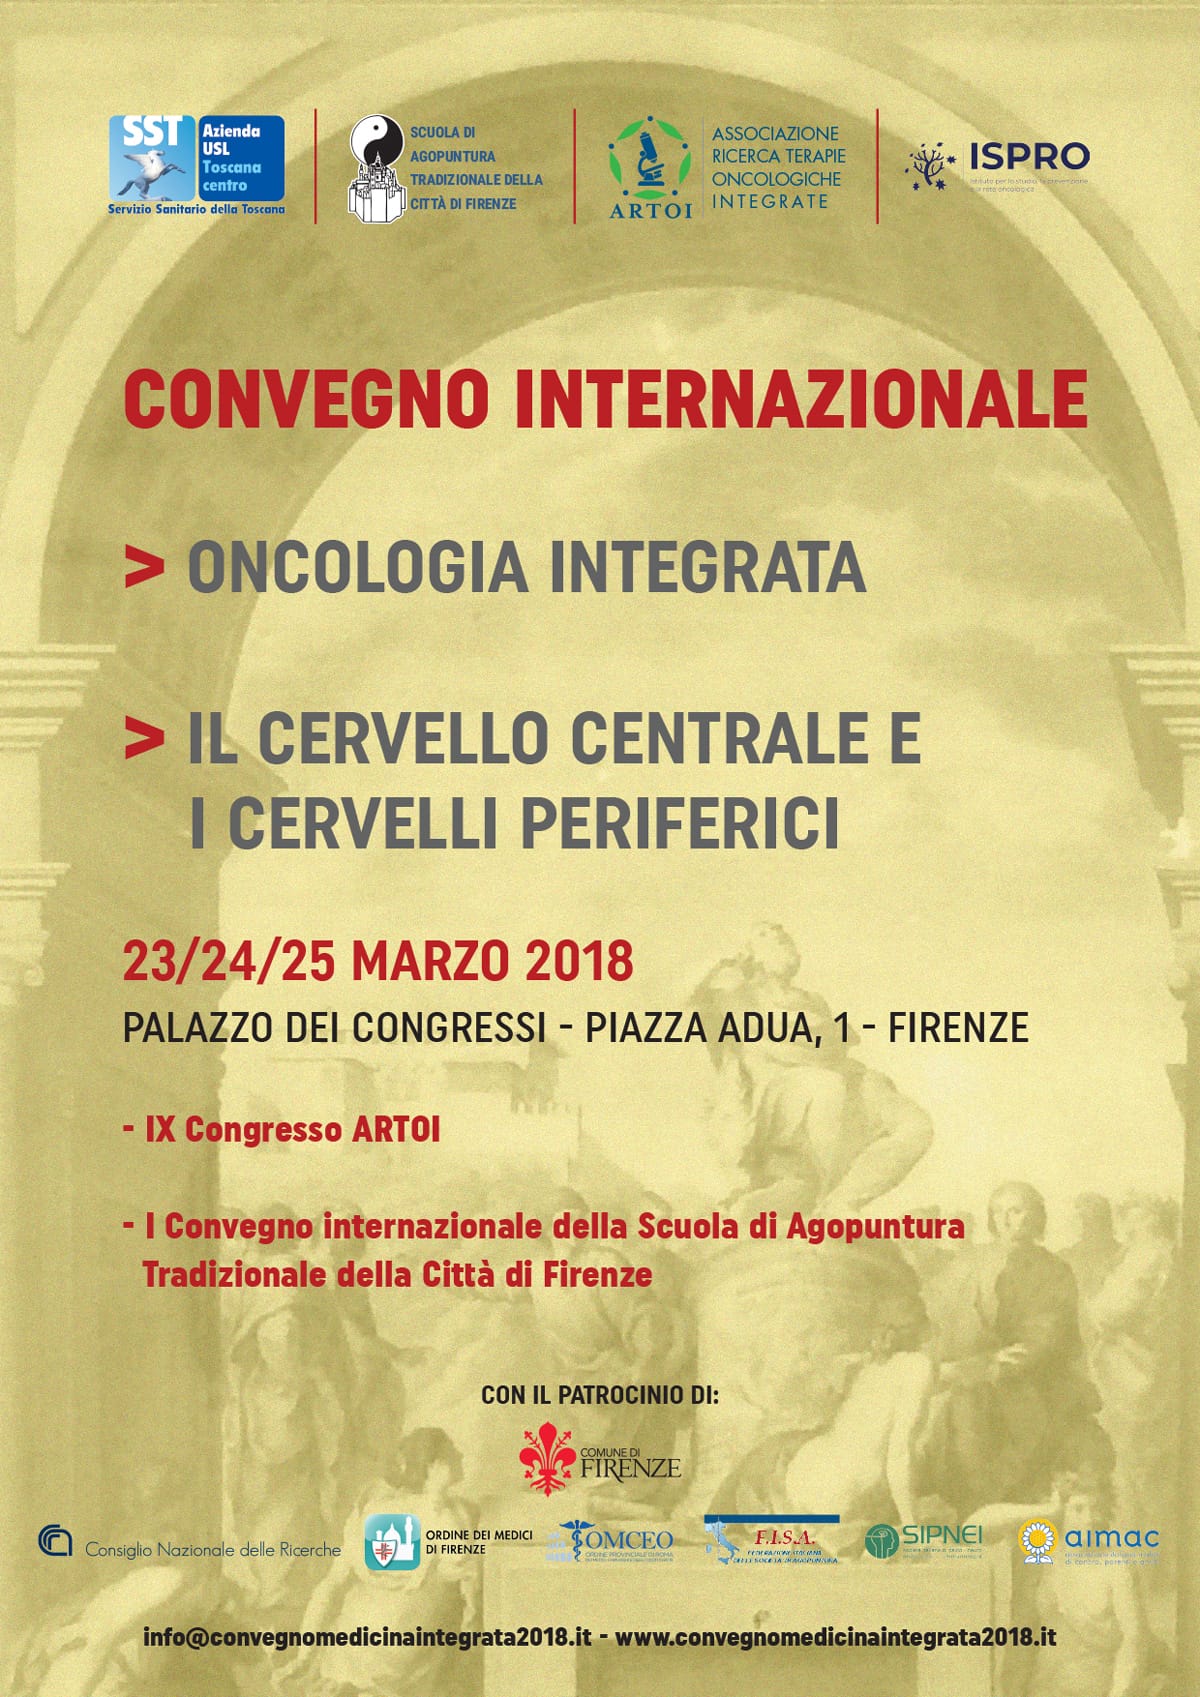 Oncologia integrata: convegno internazionale a Firenze